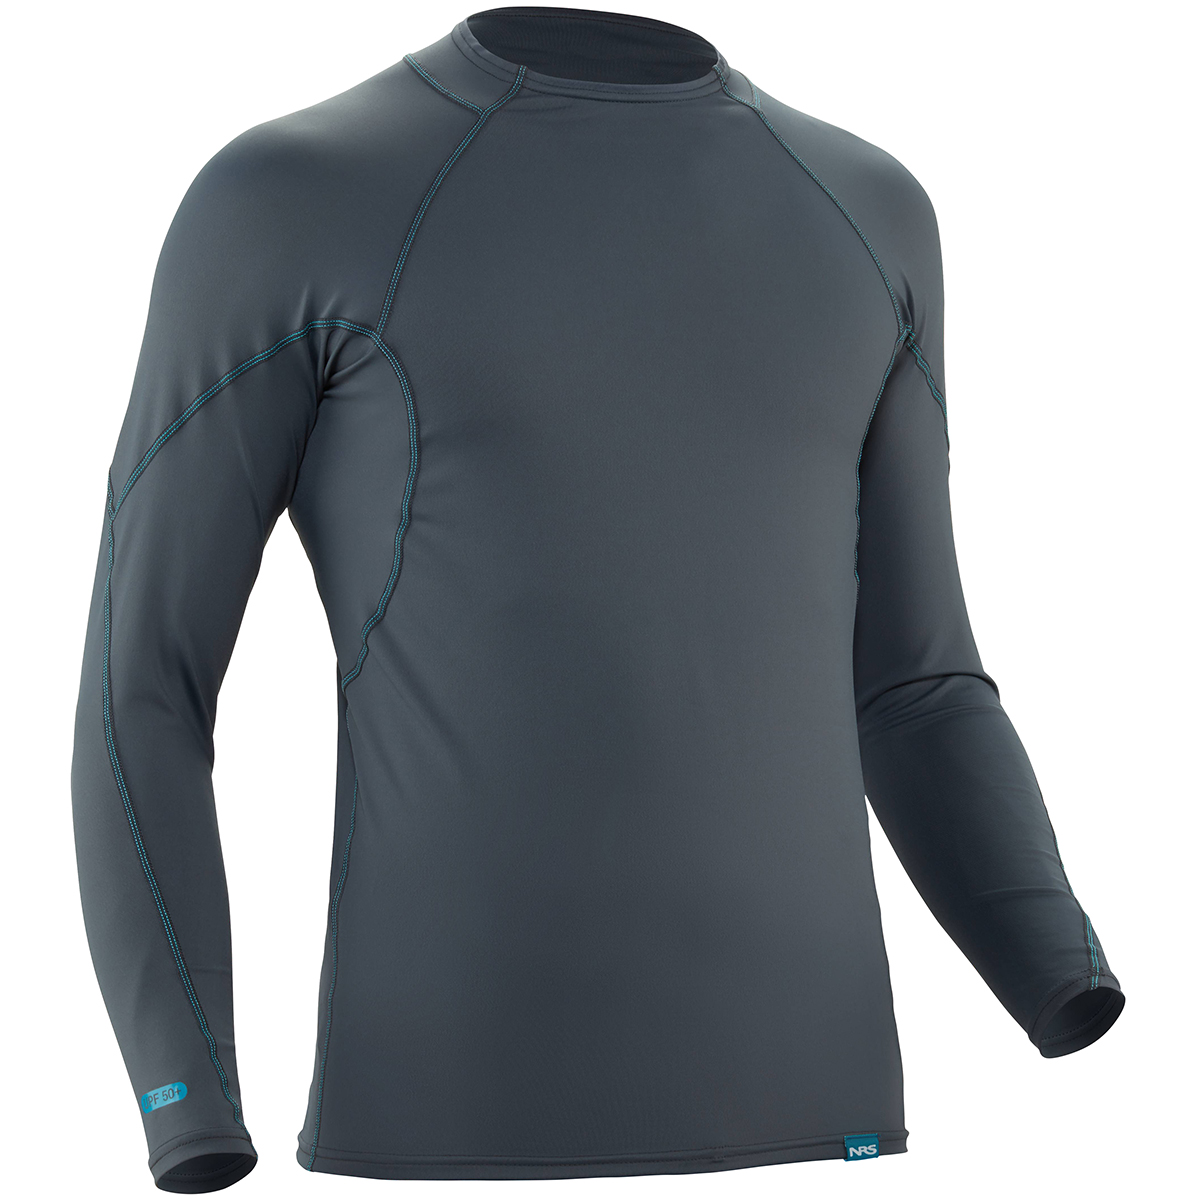 NRS Men's H2Core Rashguard Long-Sleeve Shirt - Size M